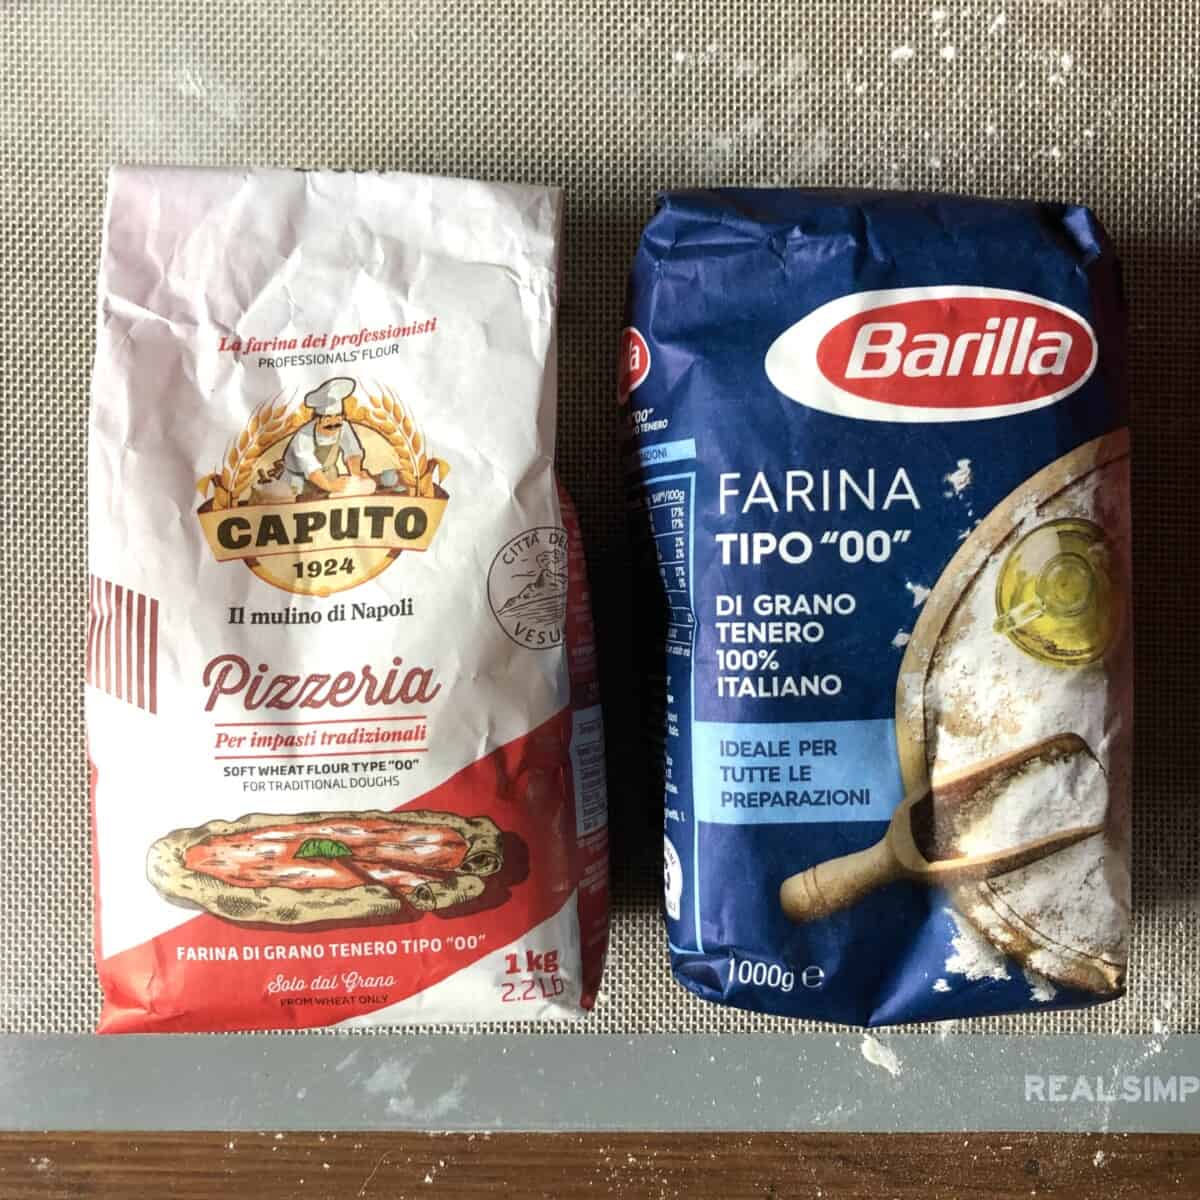 Caputo 12.5% protein 00 Italian flour bag on the left and Barilla 11% 00 Italian flour bag on the right